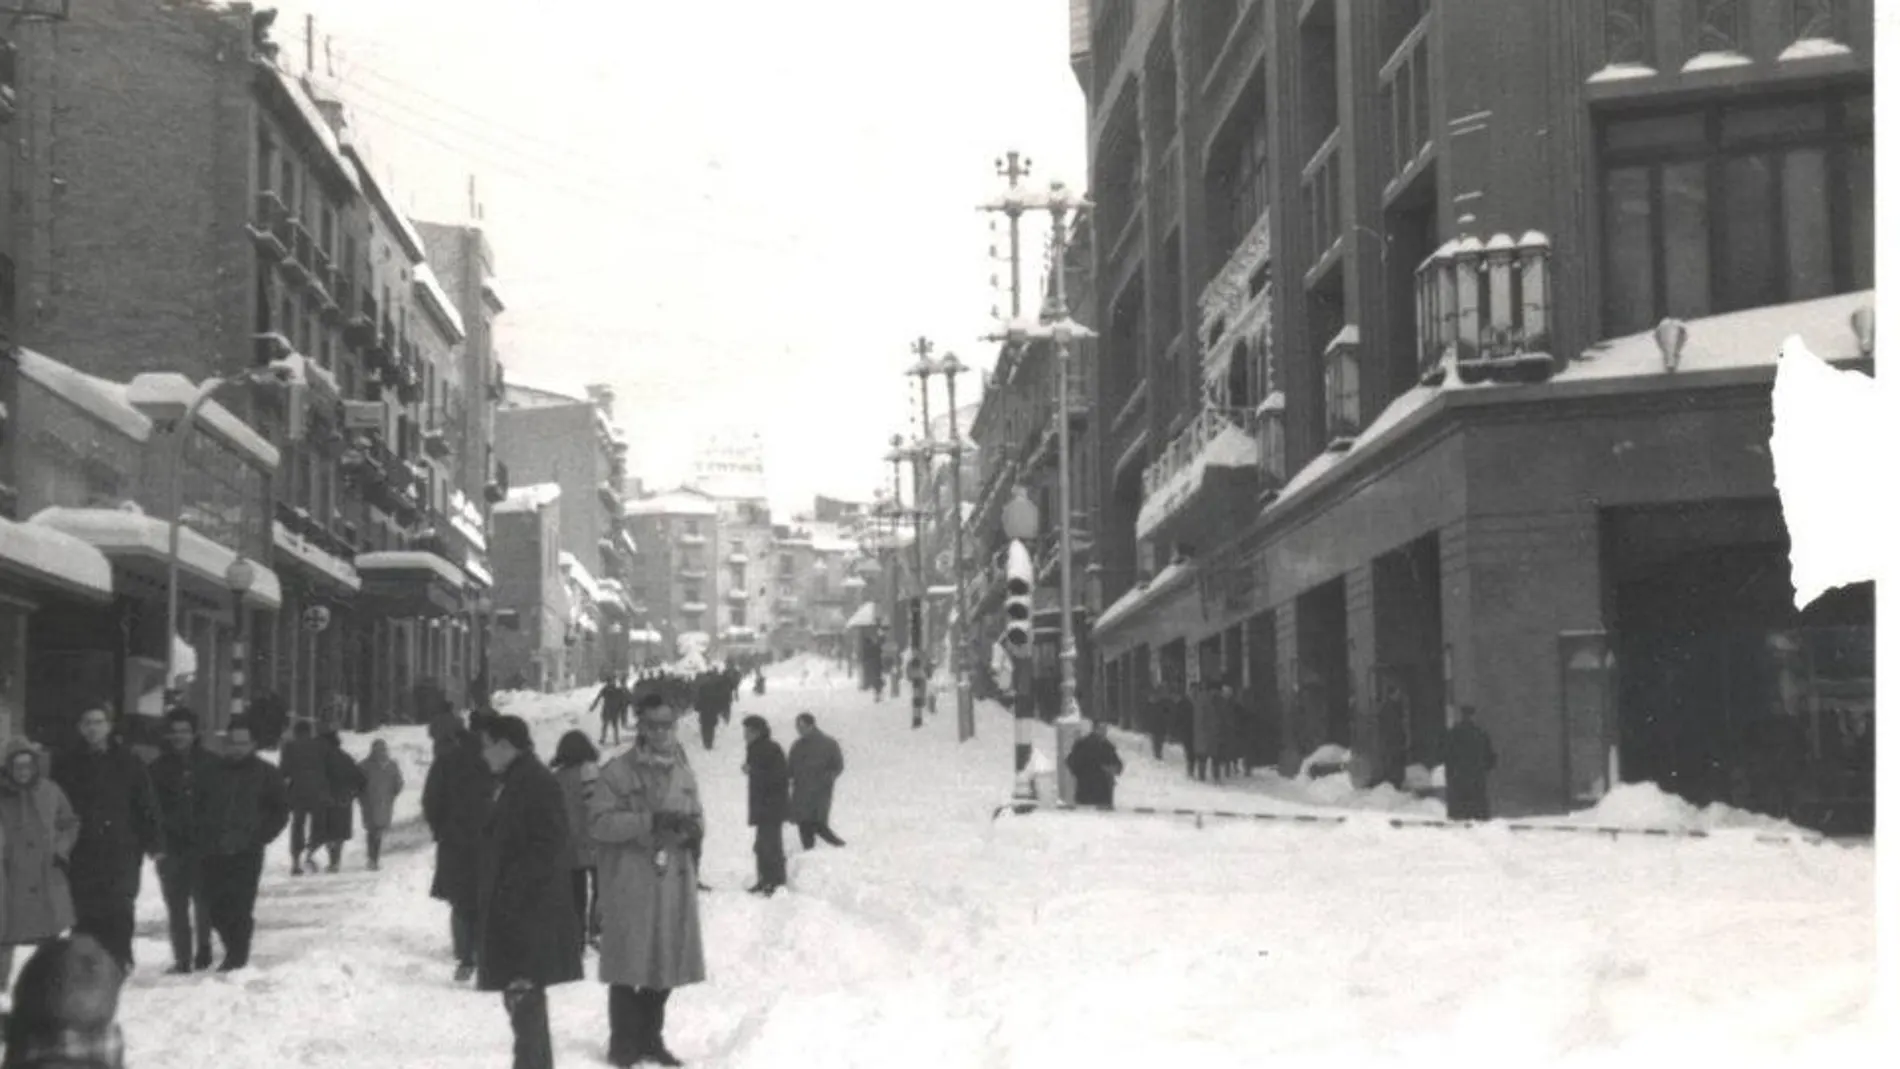 Fotografía de la nevada del desembre de 1962 en BArcelona, realizada por Rossend Capellà